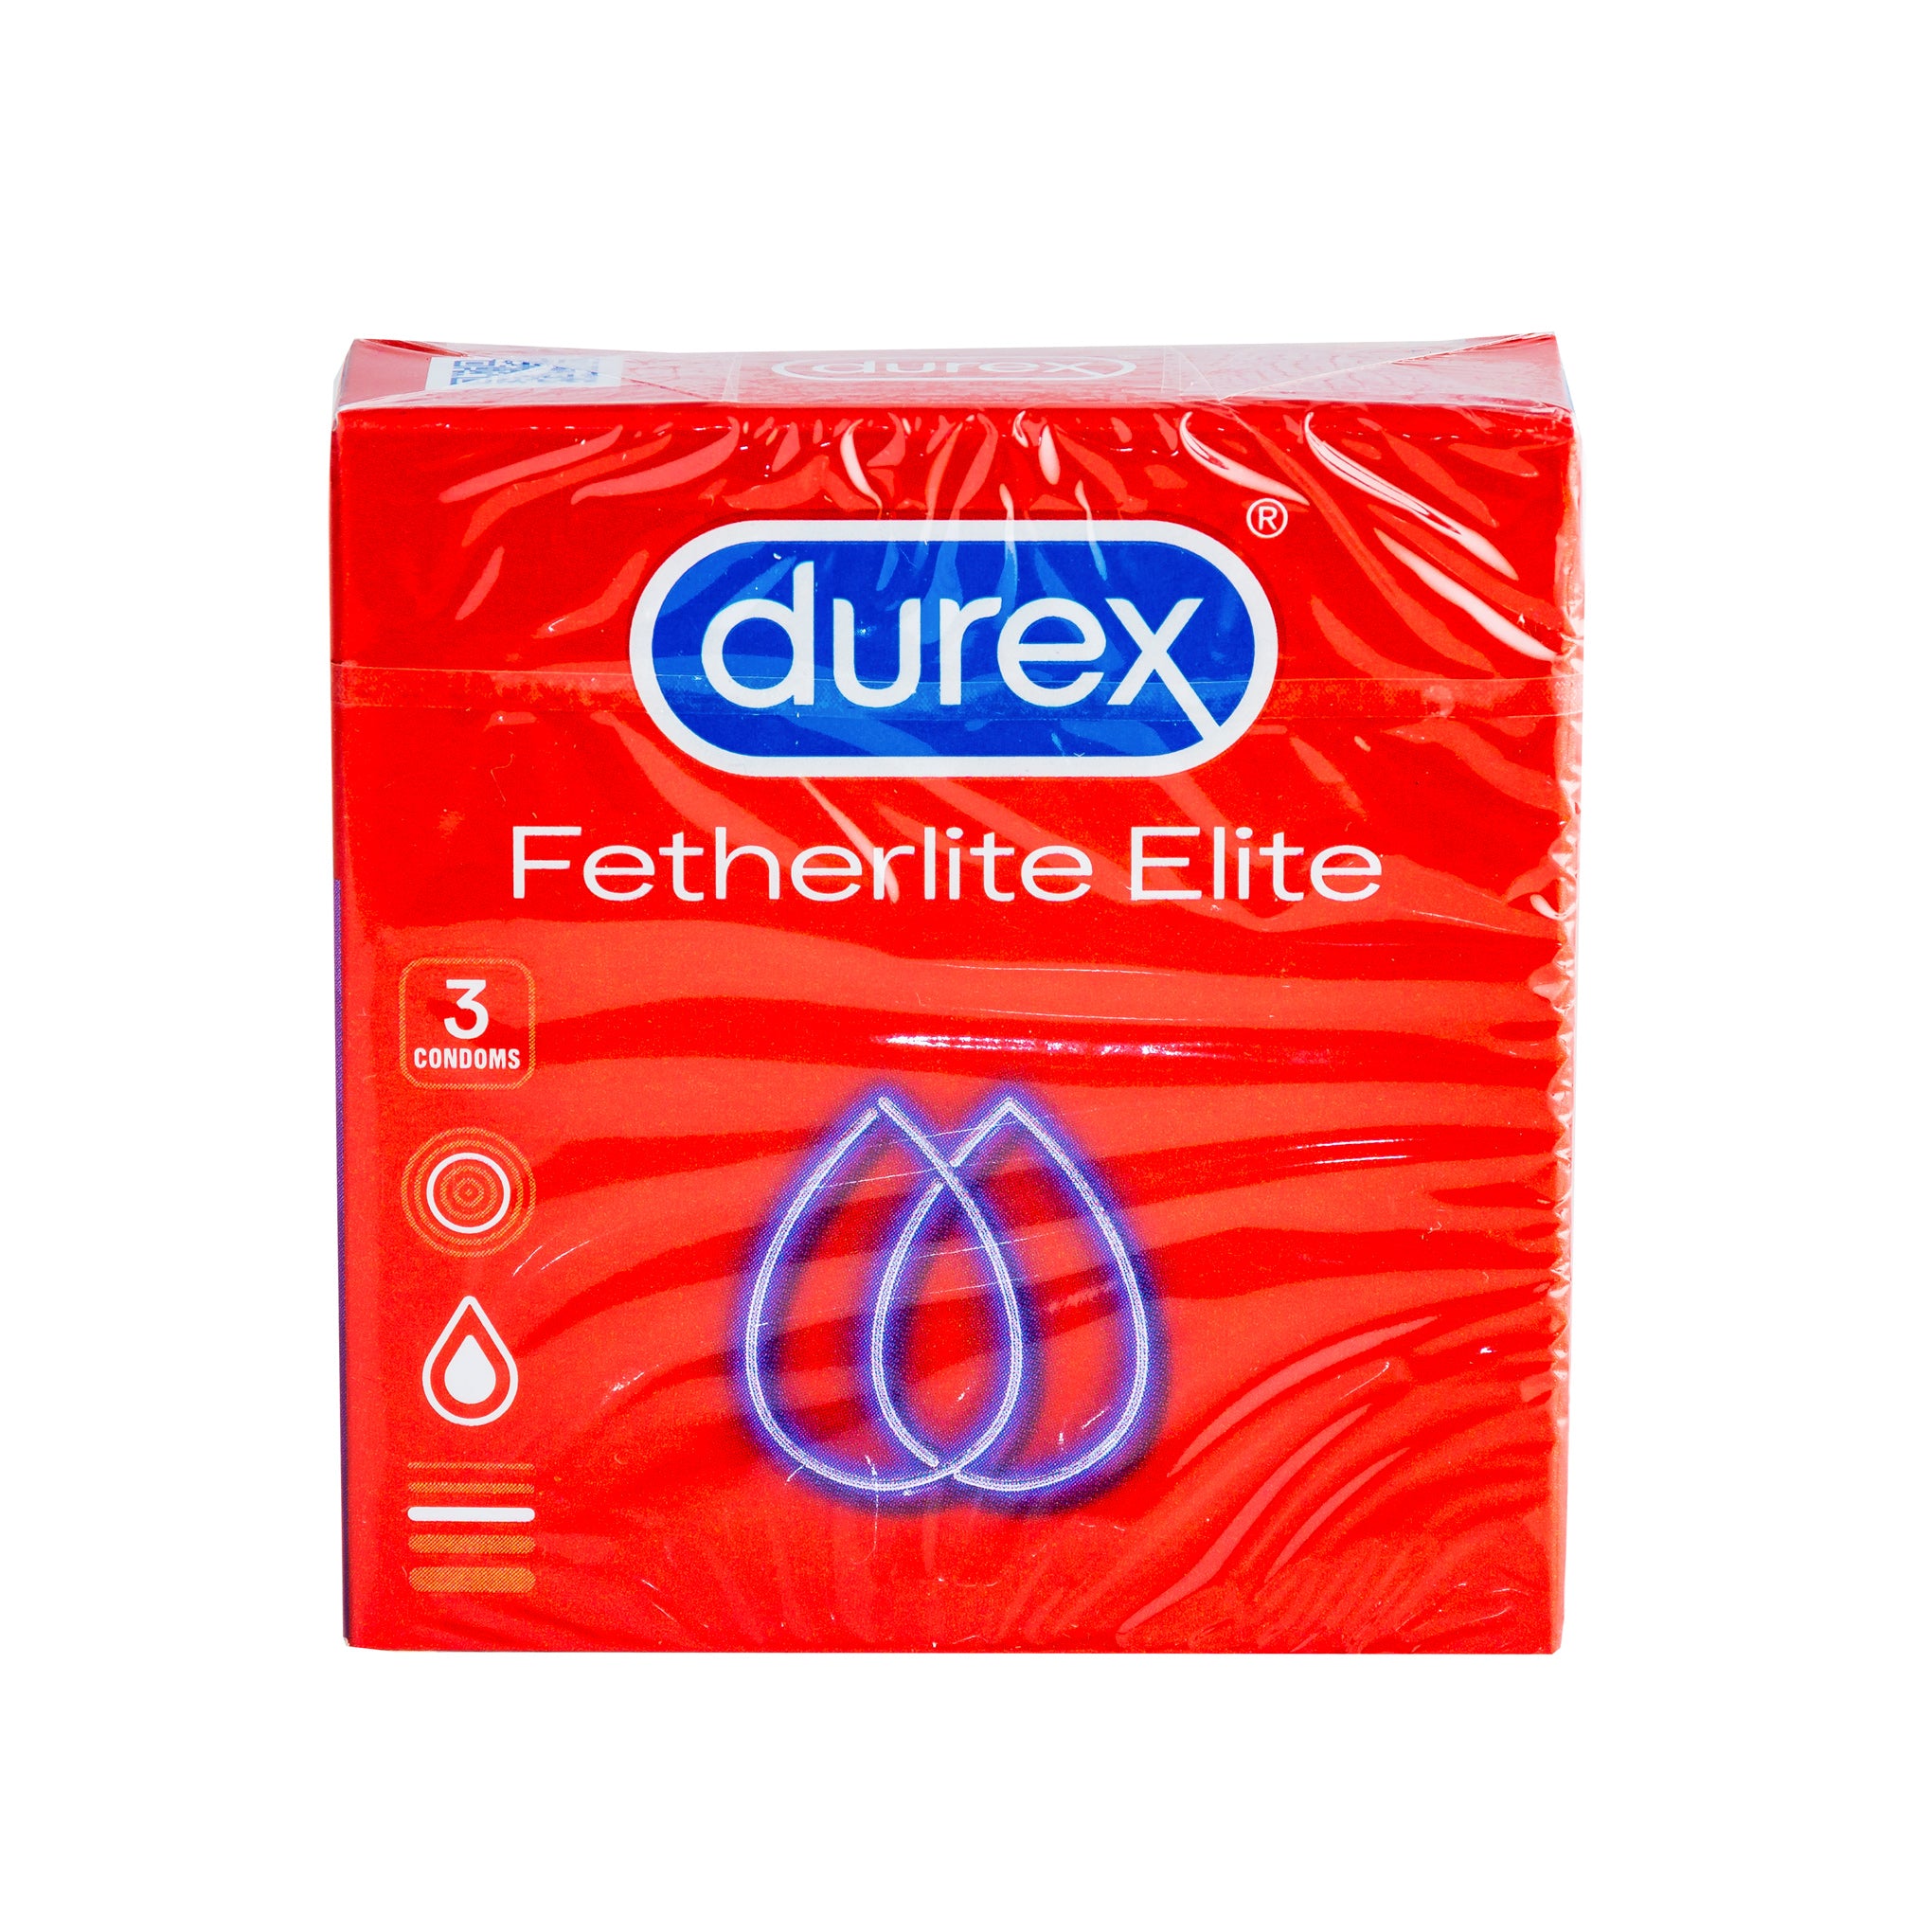 Durex Fetherlite Elite Condoms x3